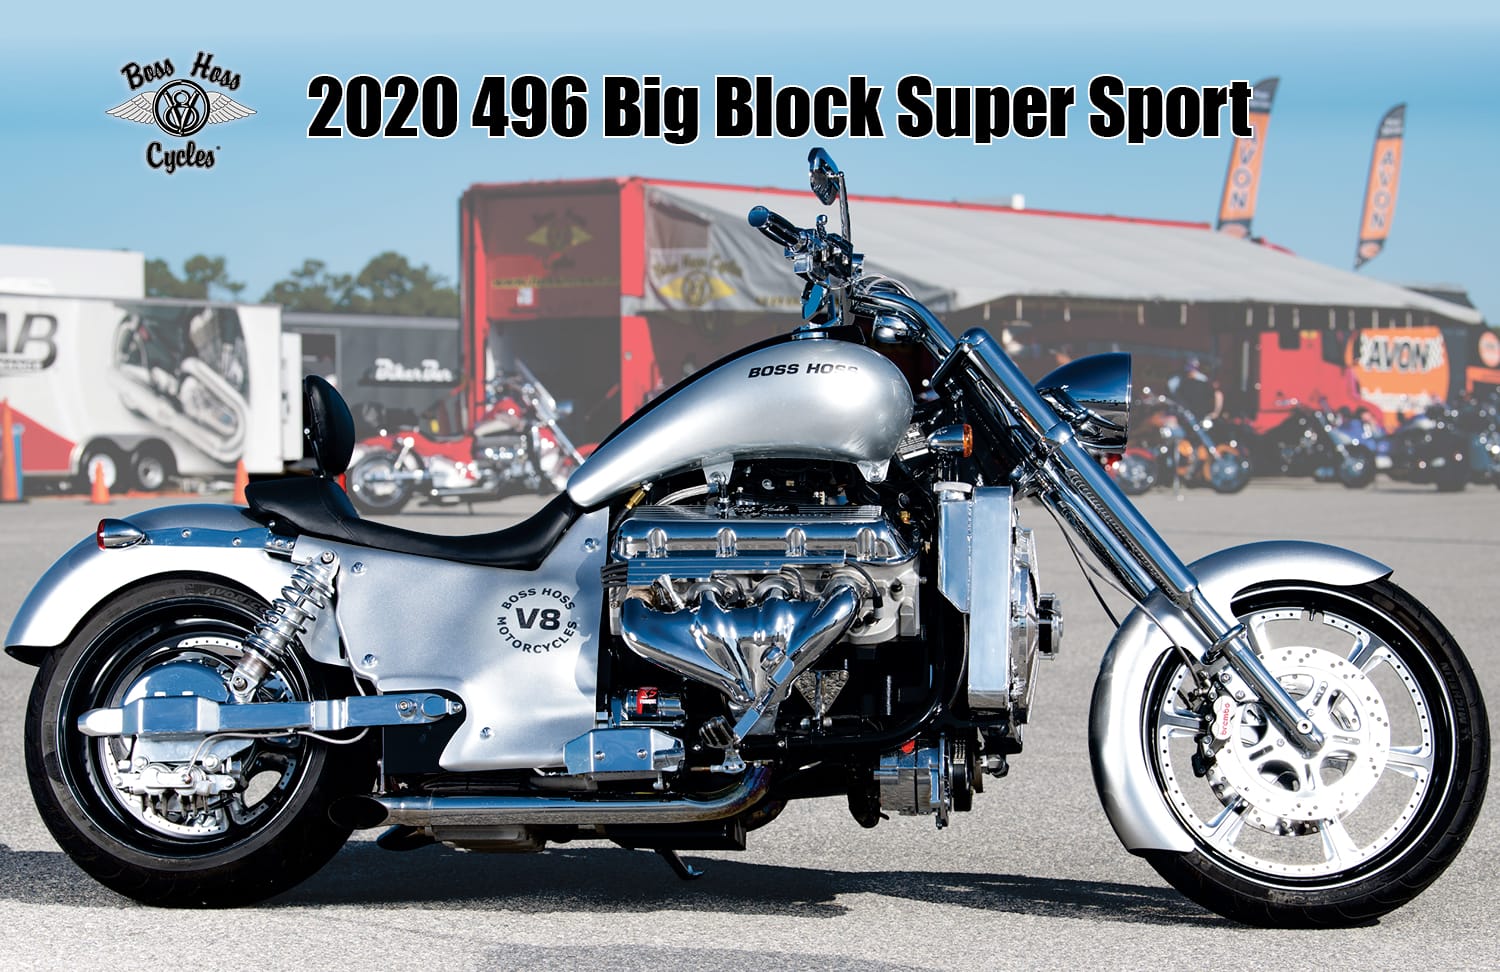 2020 496 Big Block – BossHoss